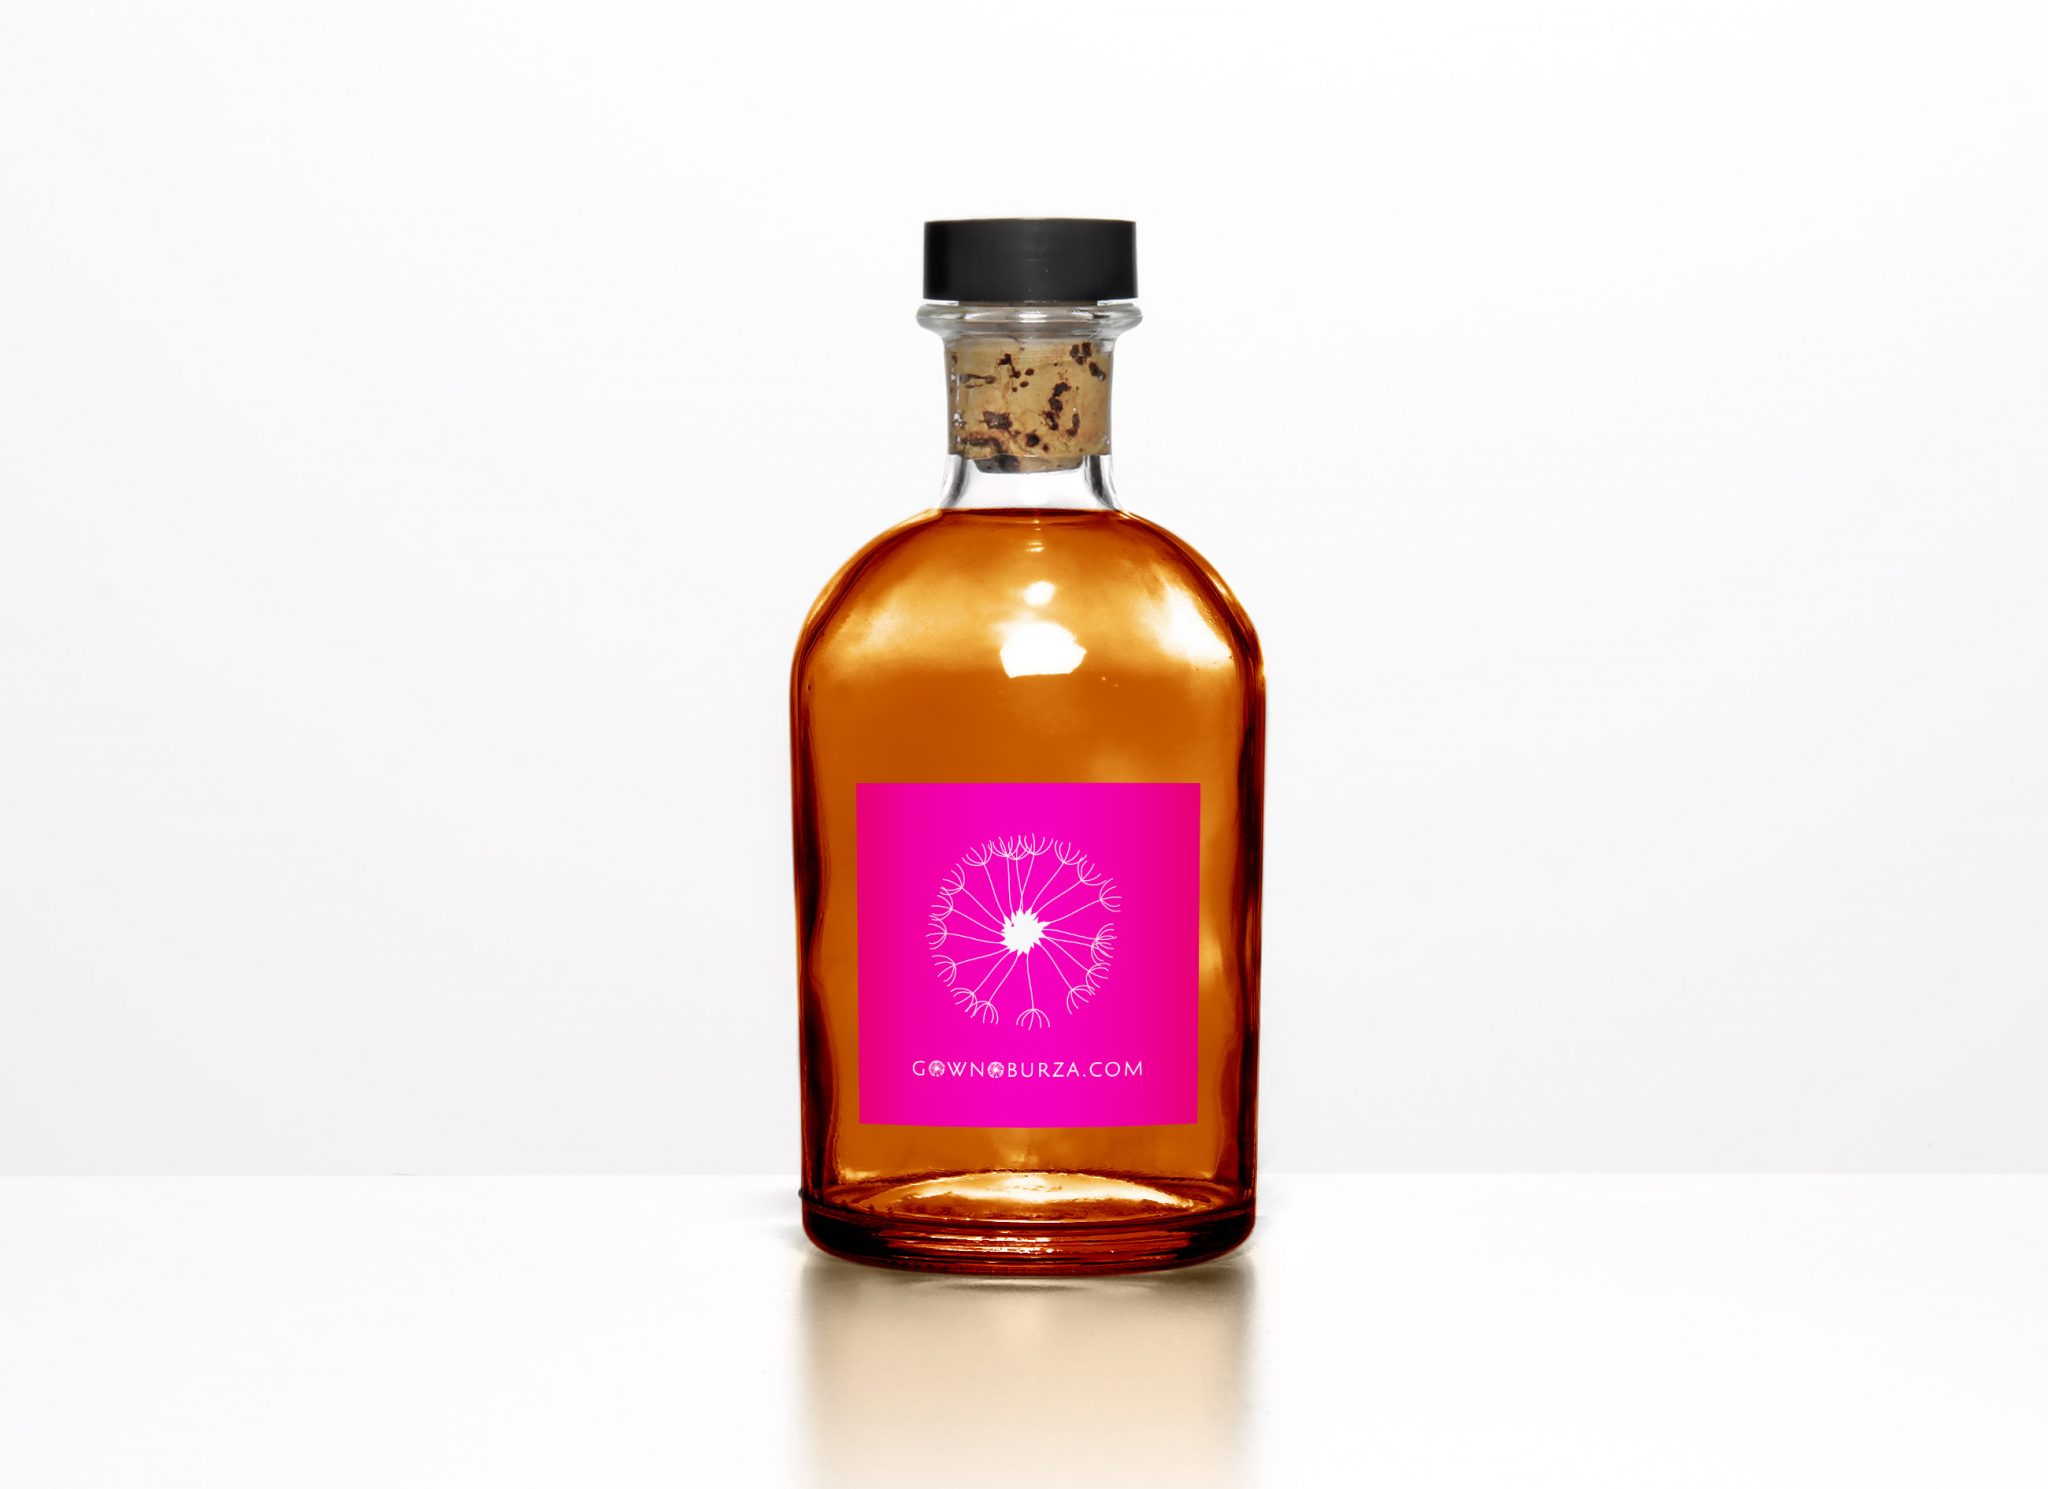 Gownoburza - golden bottle